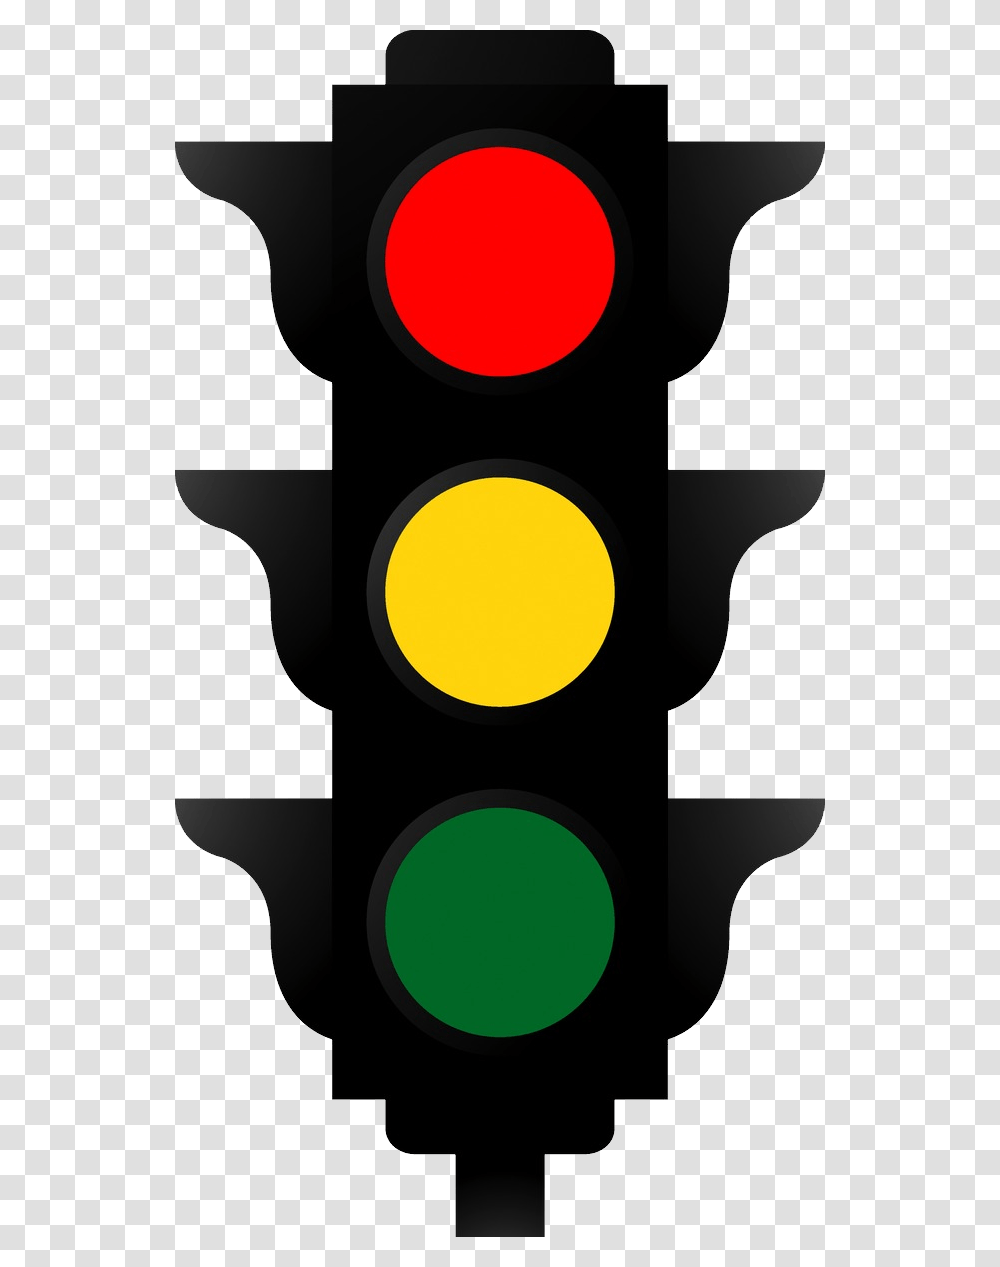 Stop Light Traffic Lights Transparent Png